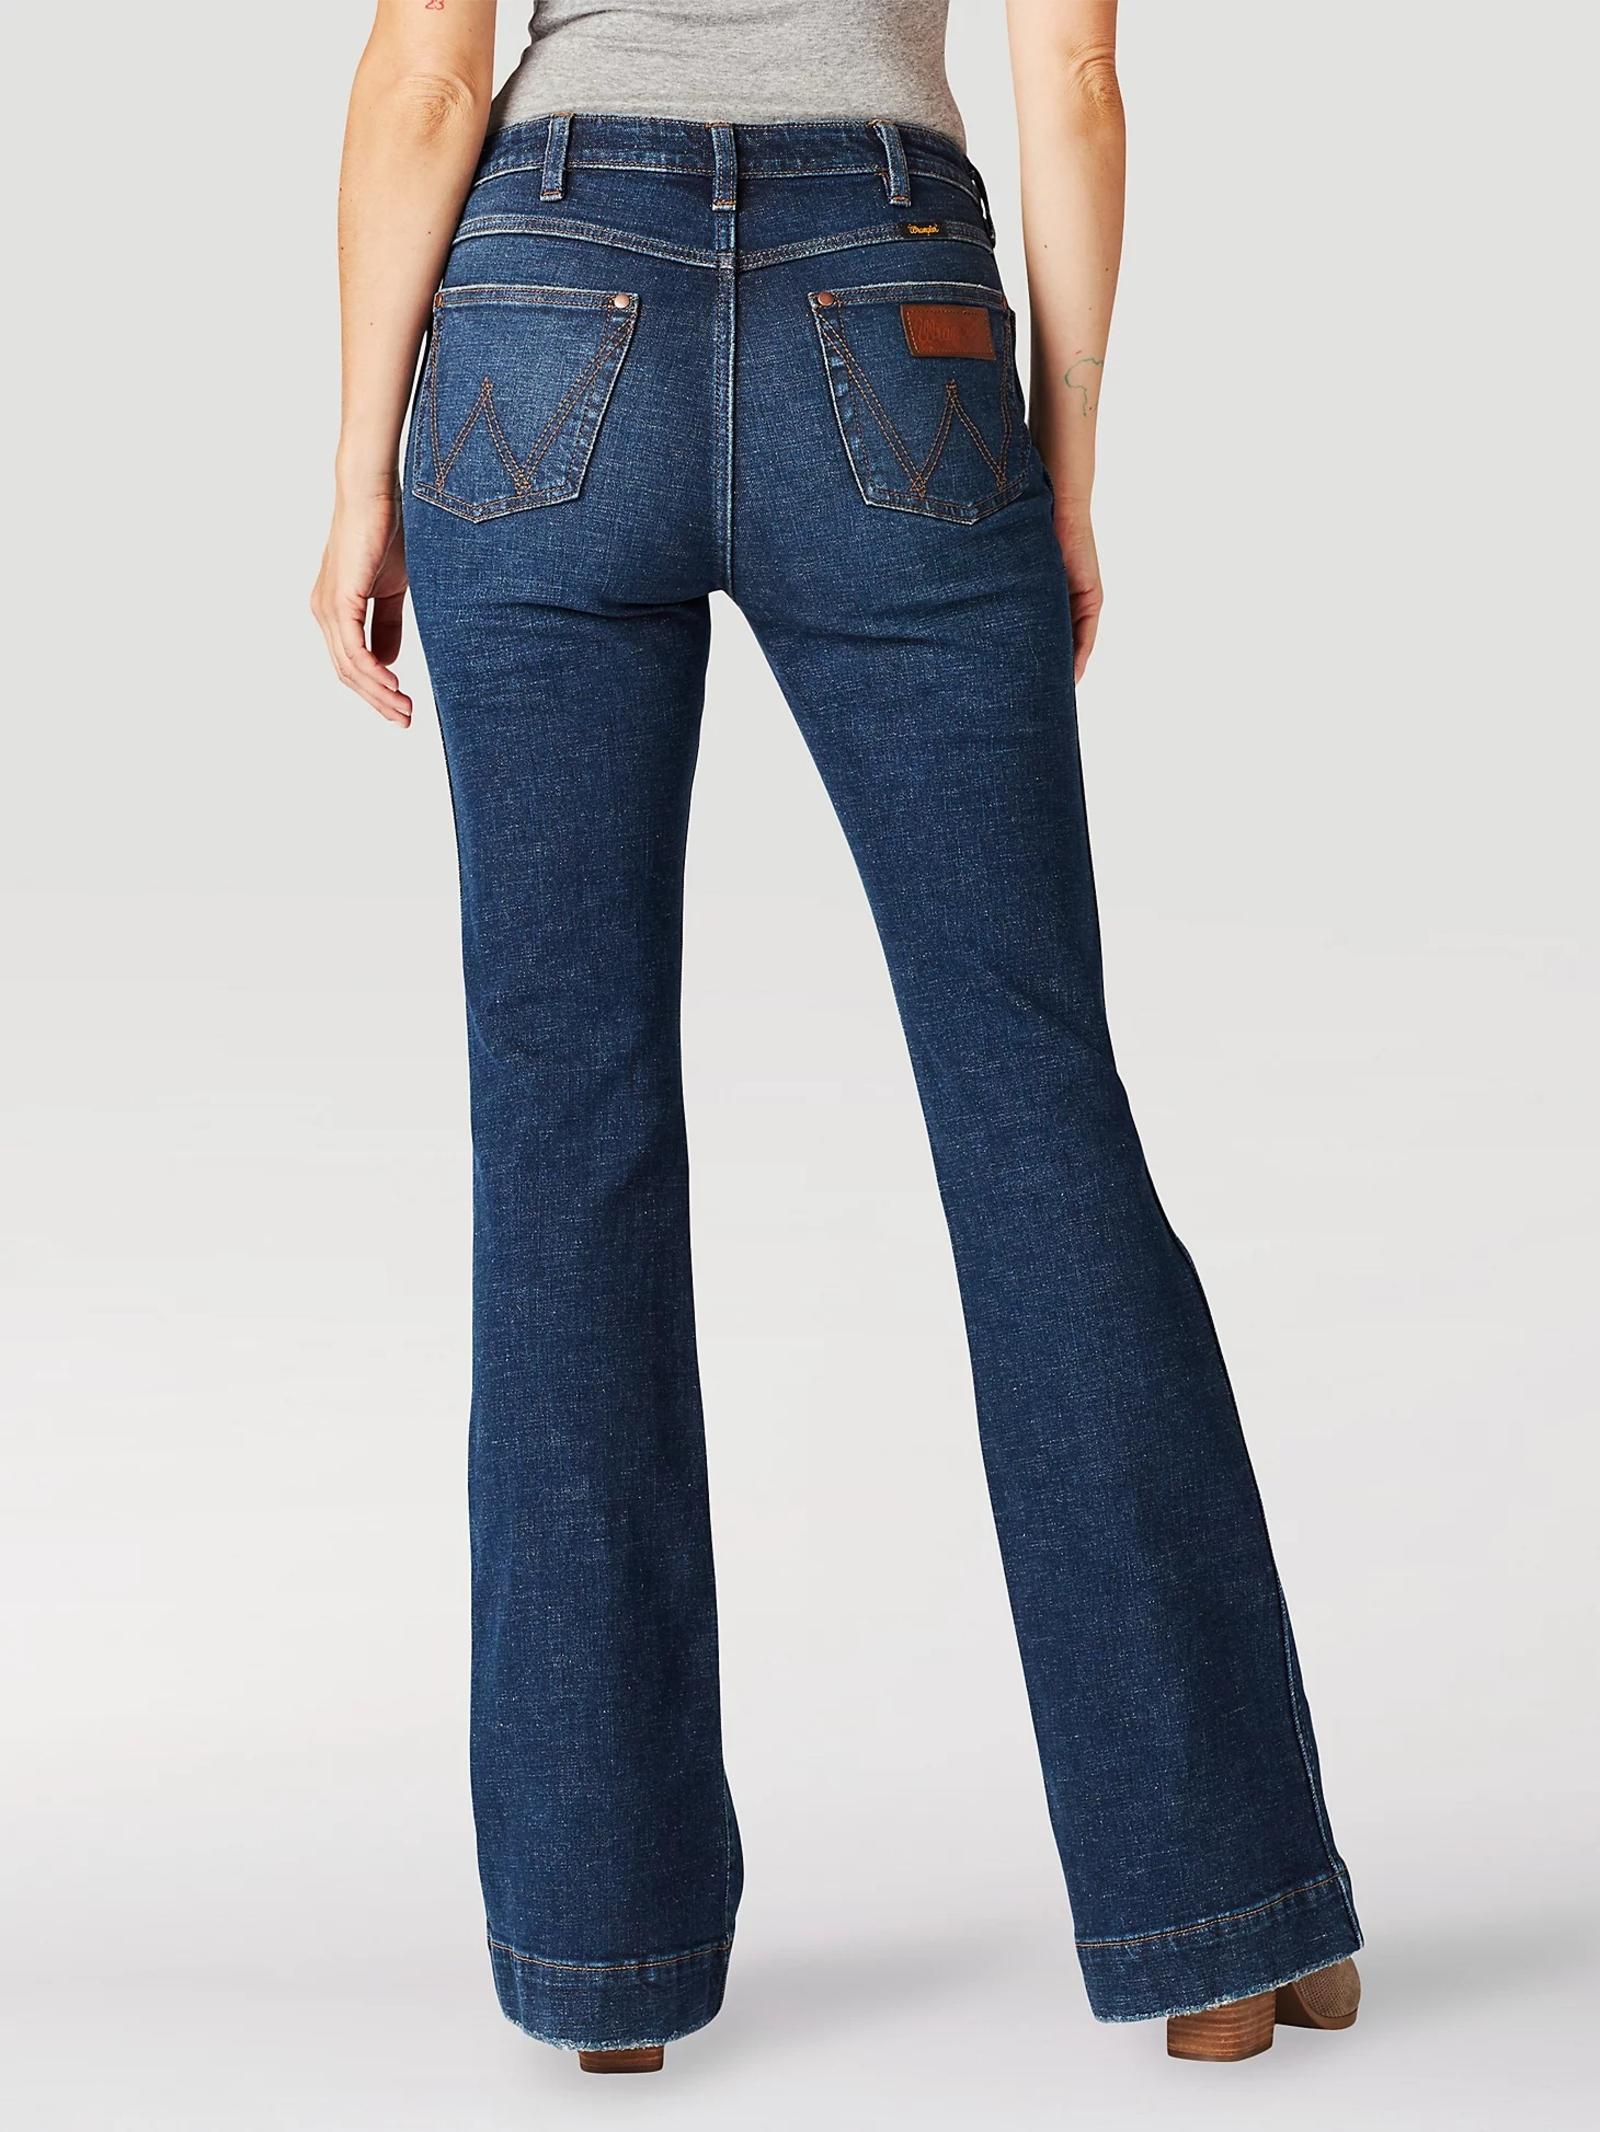  The Wrangler Retro® Premium Jean: Women's High Rise Trouser in Ellery 